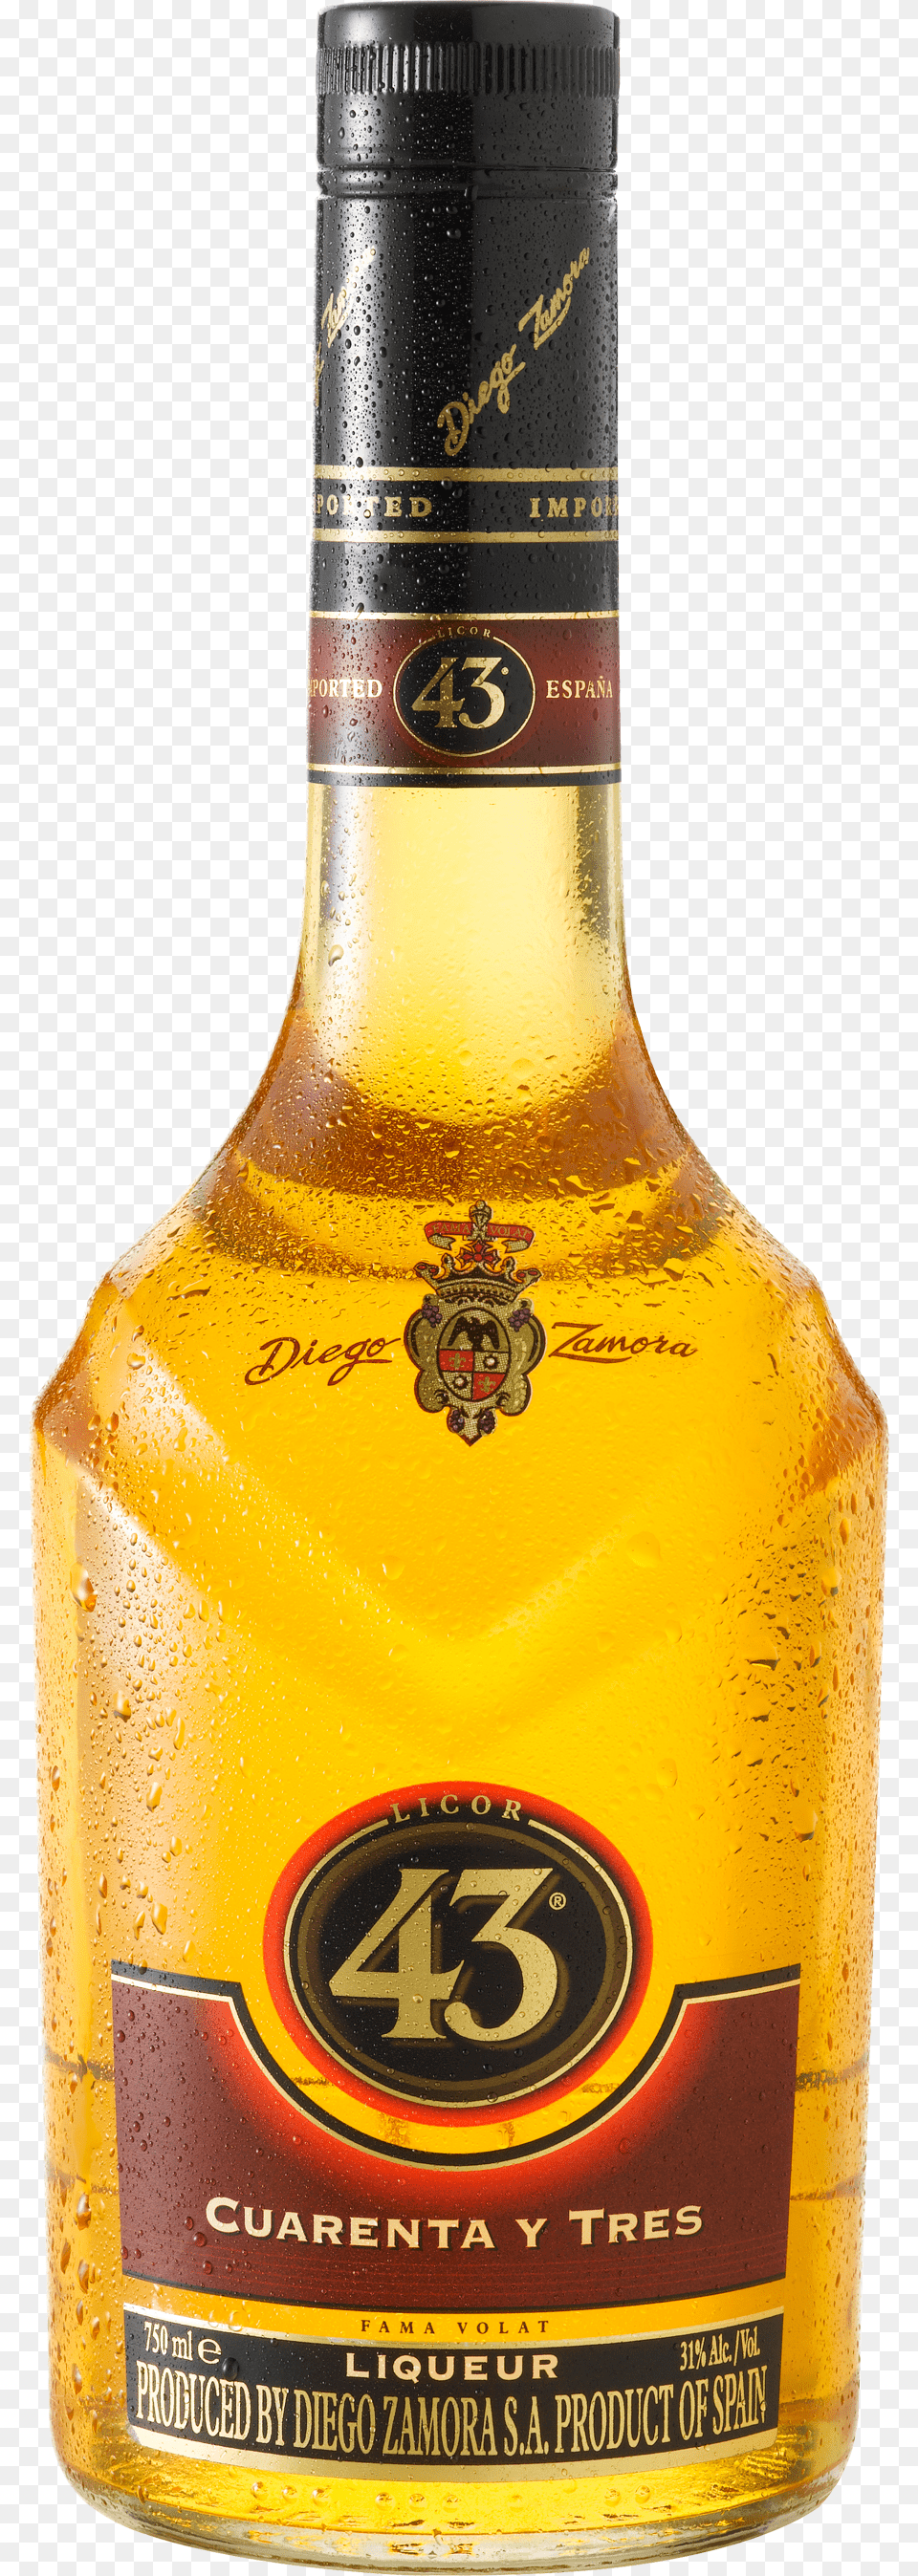 Drinking Clipart Alcohol Bottle Drink Beer Bottle, Beverage, Liquor Free Transparent Png